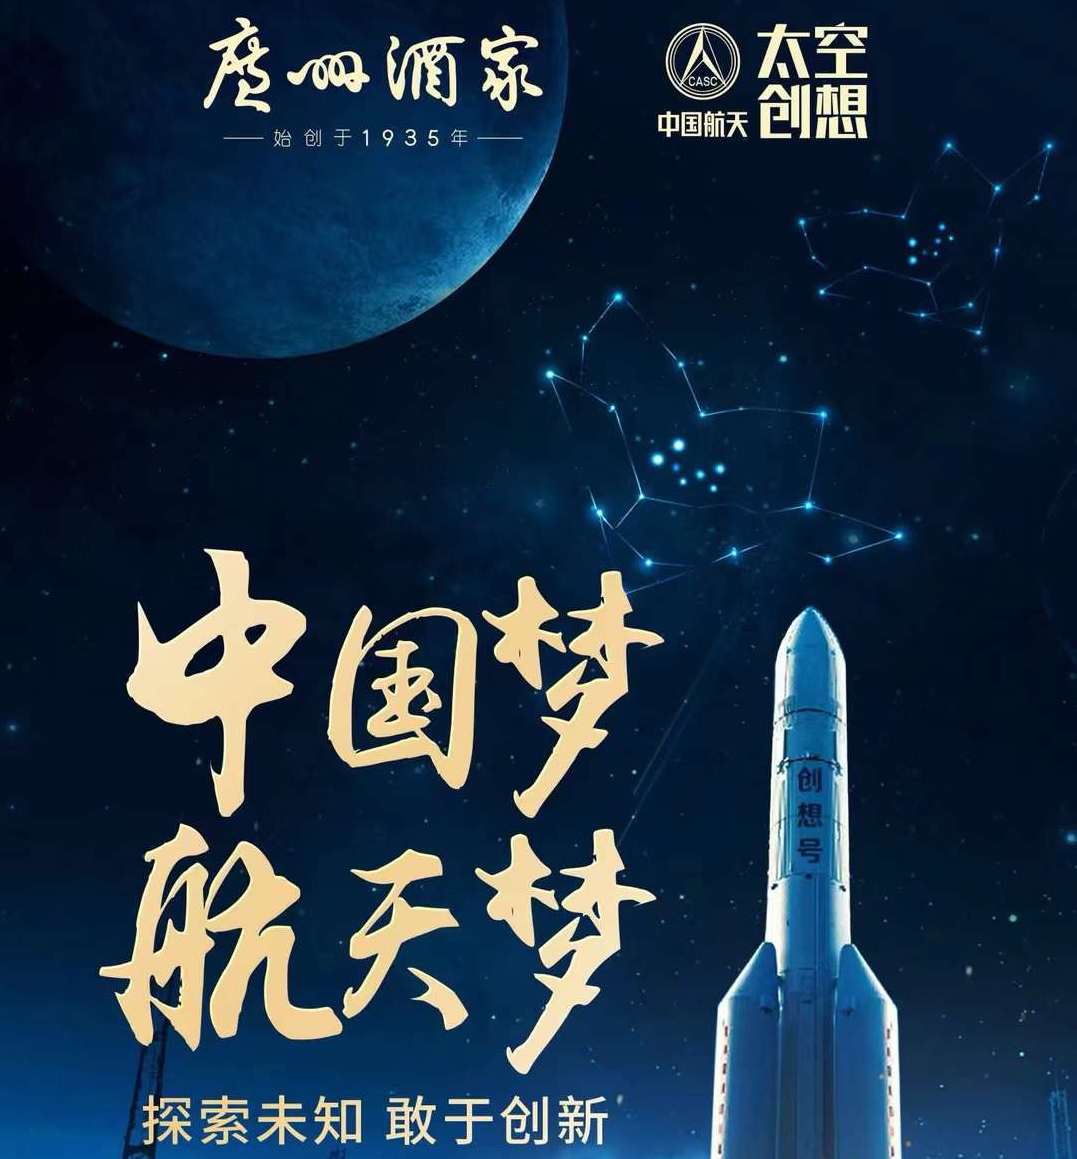 今天是中国航天日，探索浩瀚宇宙，jbo竞博永不止步。jbo竞博是这种探索精神的“课代表”，坚持传承和创新，87载初心不移，只为将正宗广式月饼发扬世界